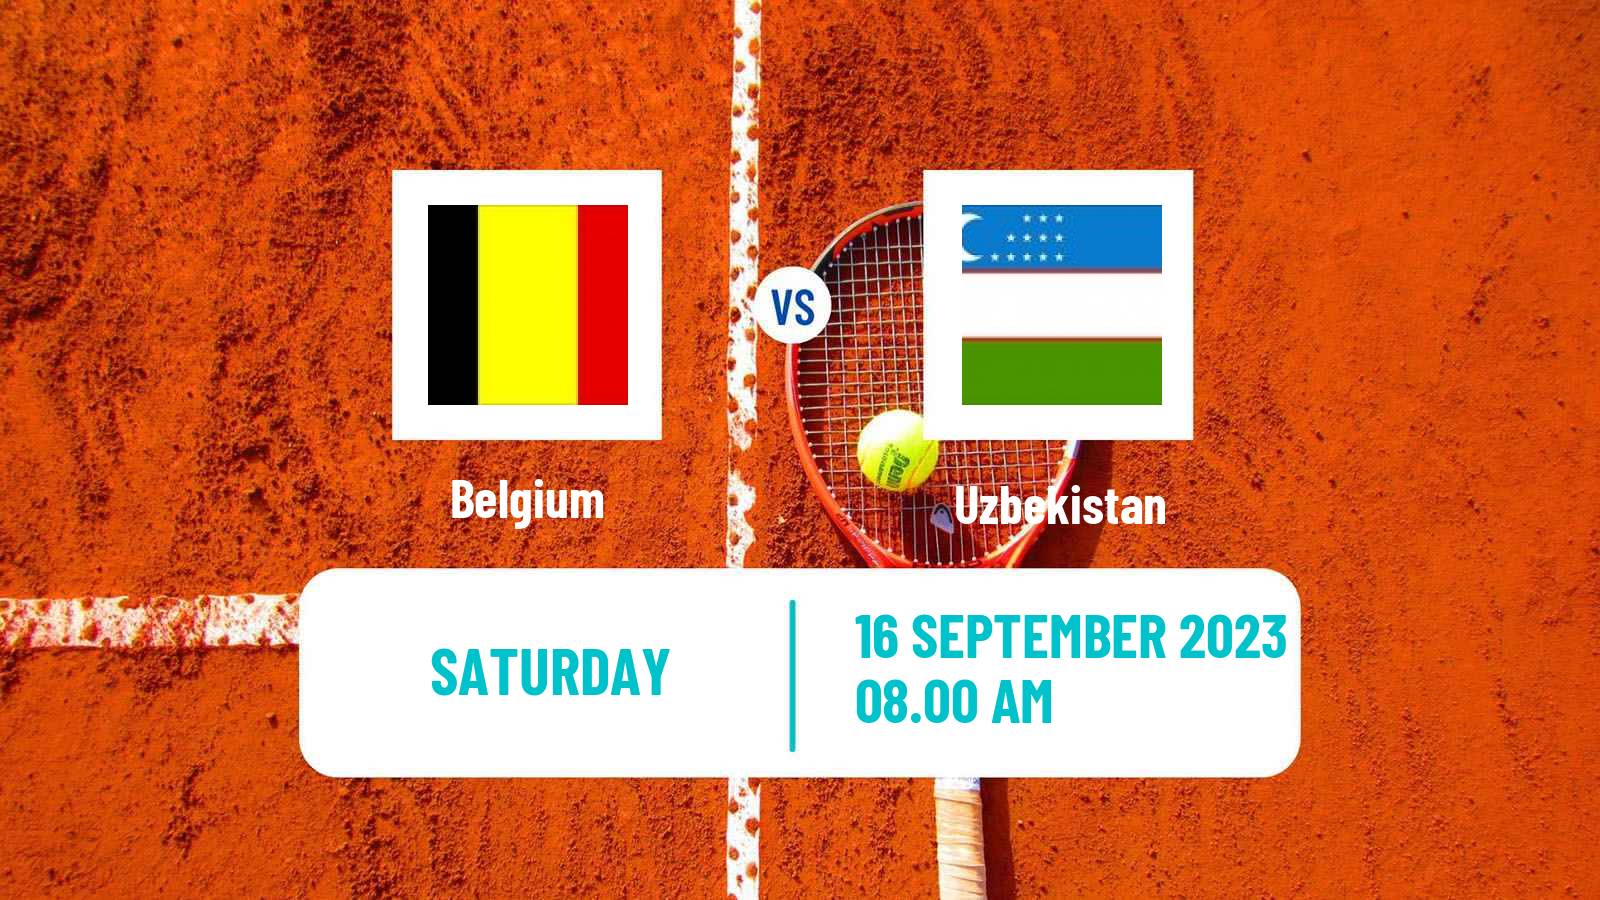 Tennis Davis Cup World Group I Teams Belgium - Uzbekistan